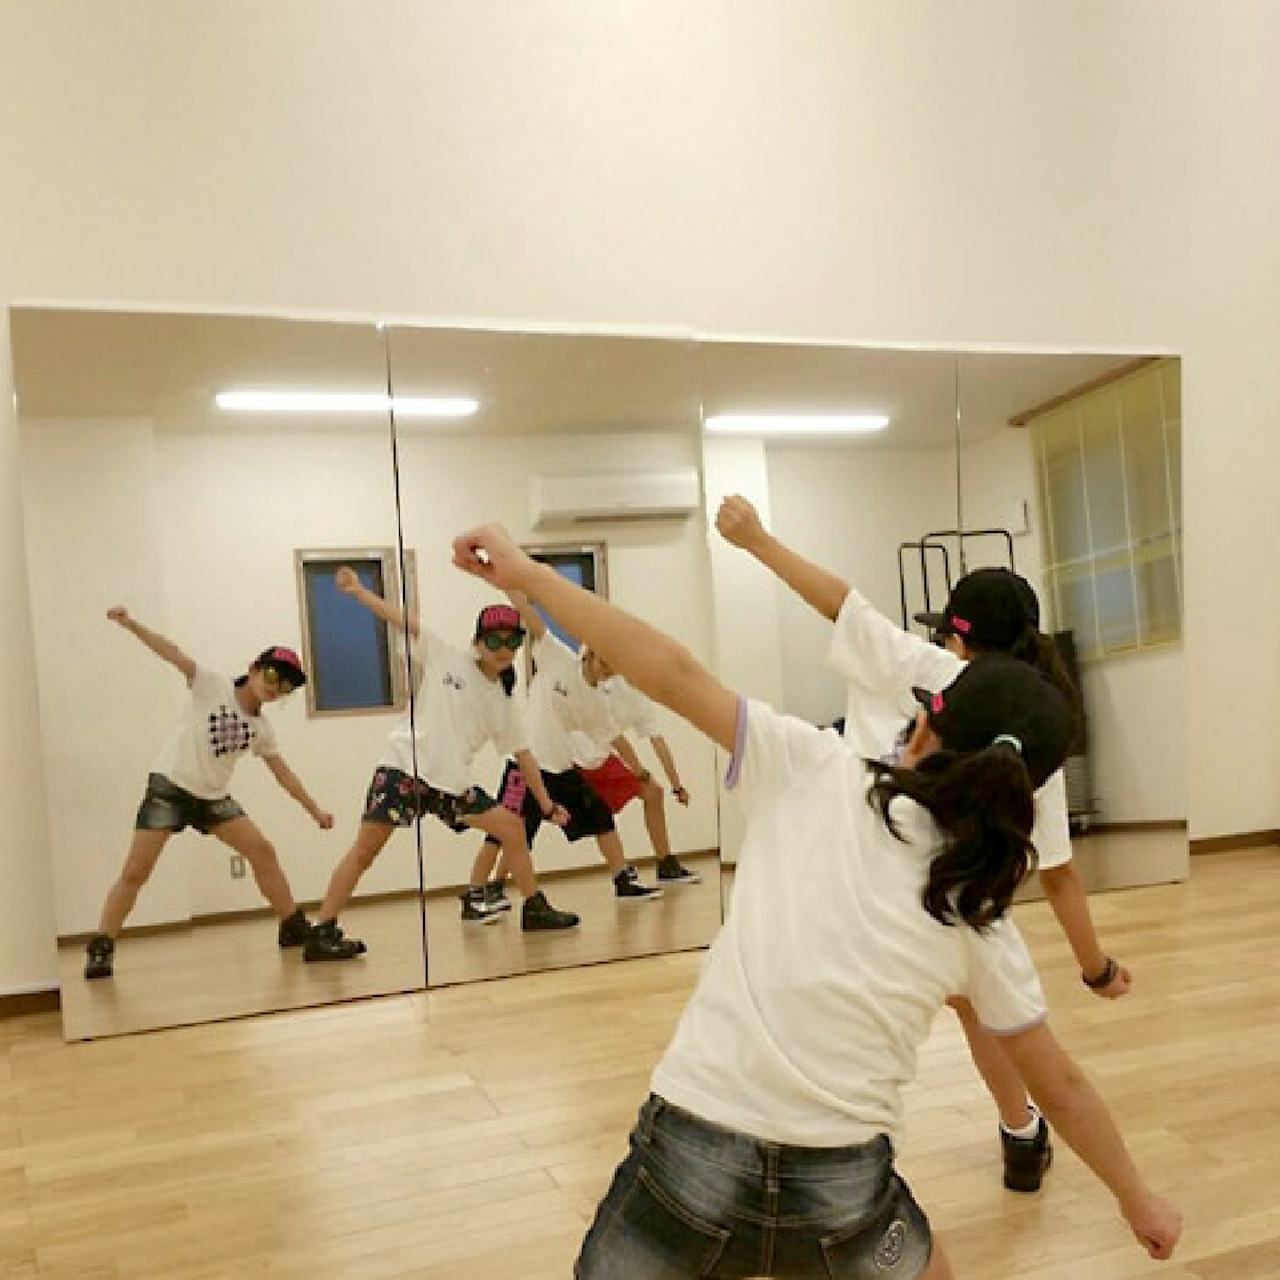 ダンススタジオの鏡に、大きな姿見を複数枚並べた事例(2)